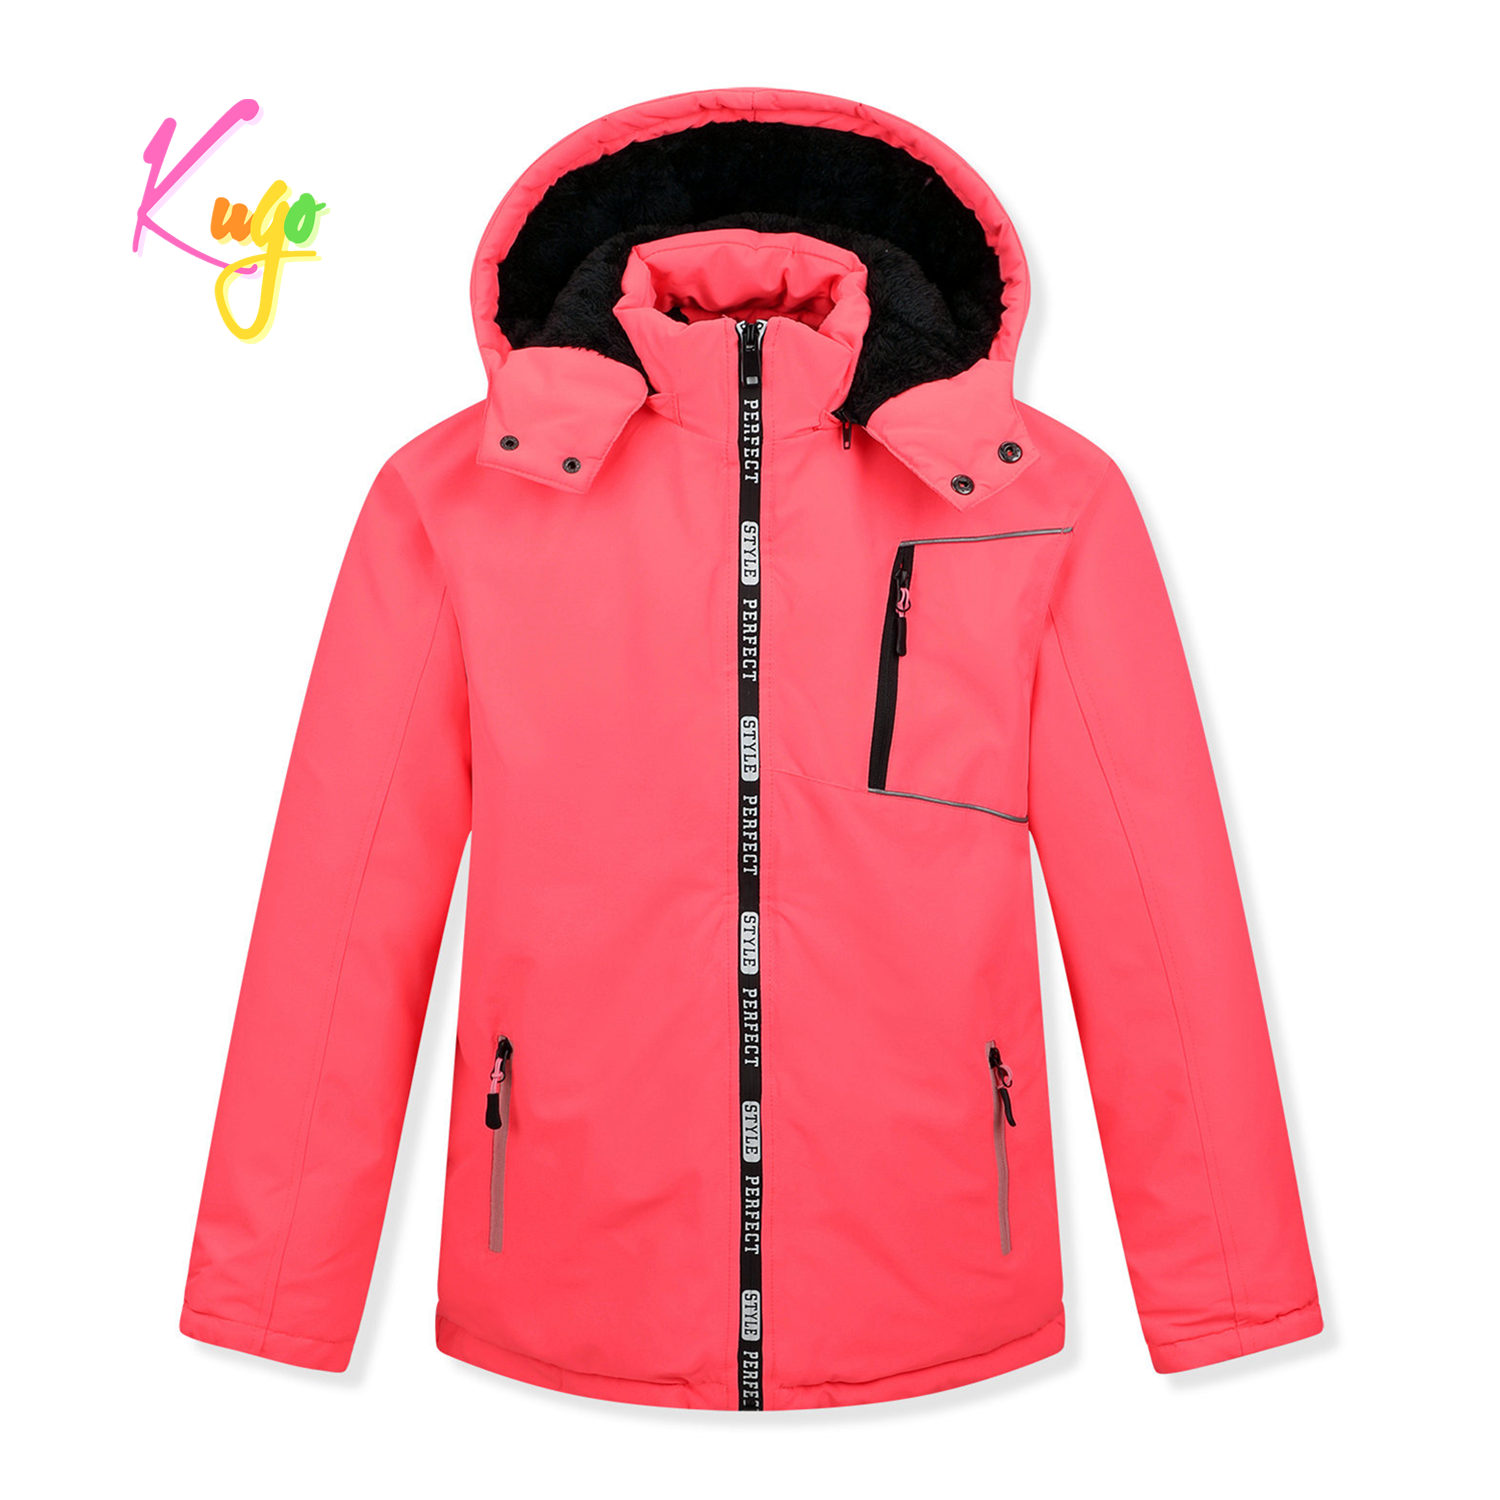 Dívčí zimní bunda - KUGO BU610, neonově lososová Barva: Lososová, Velikost: 158